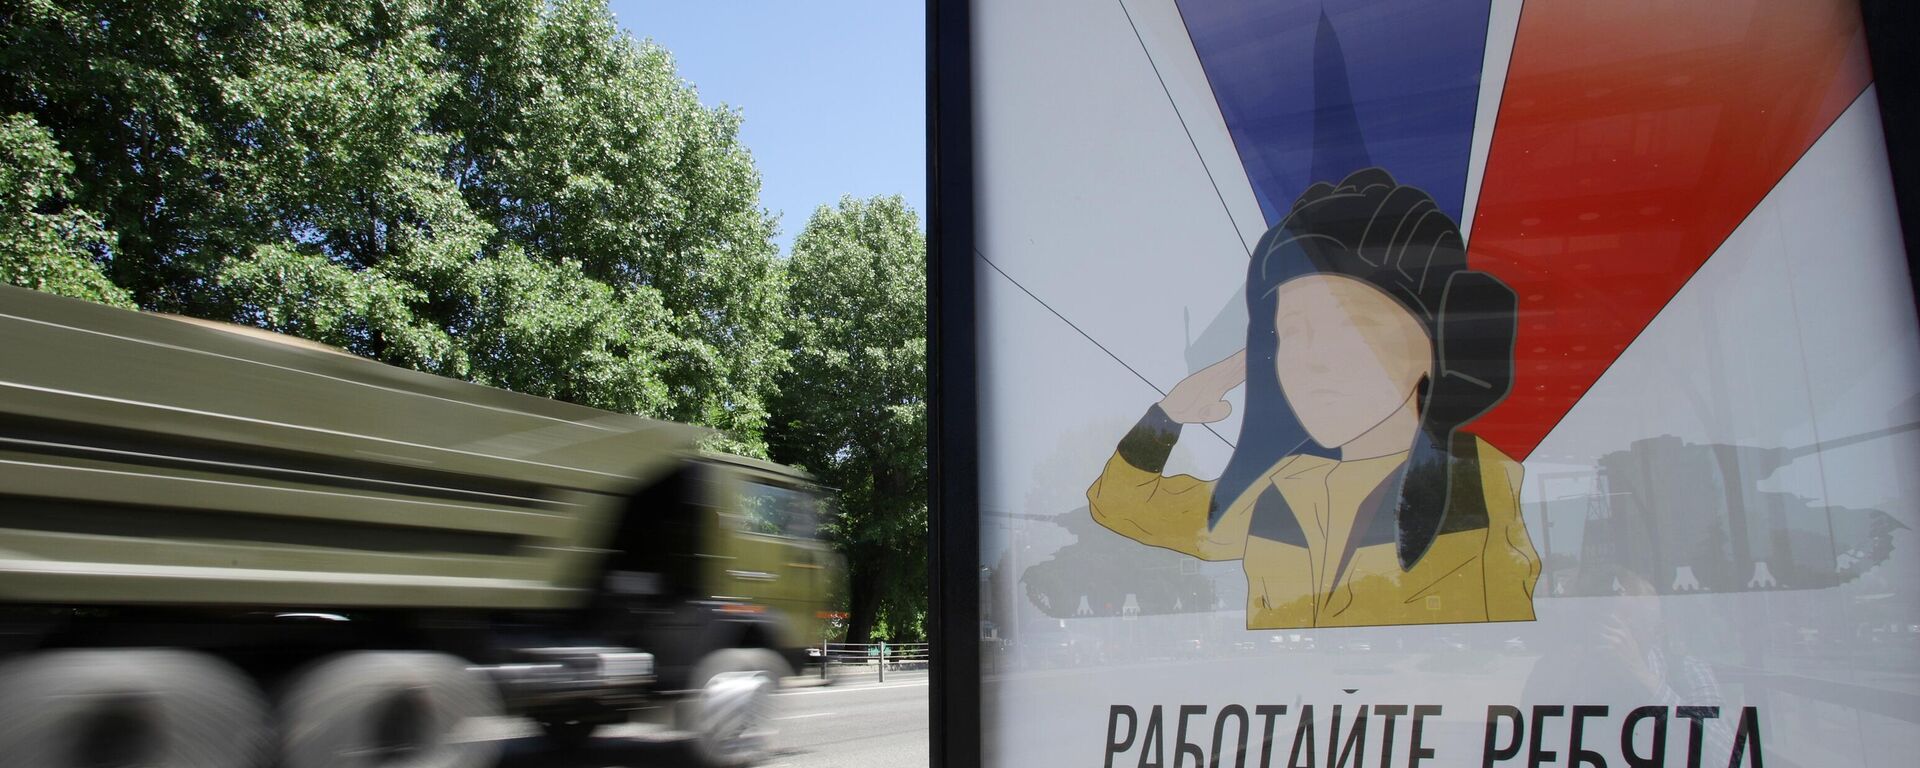 Veículo militar passa ao lado de um cartaz com a imagem do menino Alyosha em uma parada de transporte público em Nalchik, na região russa de Belgorod, 31 de maio de 2022 - Sputnik Brasil, 1920, 02.07.2022